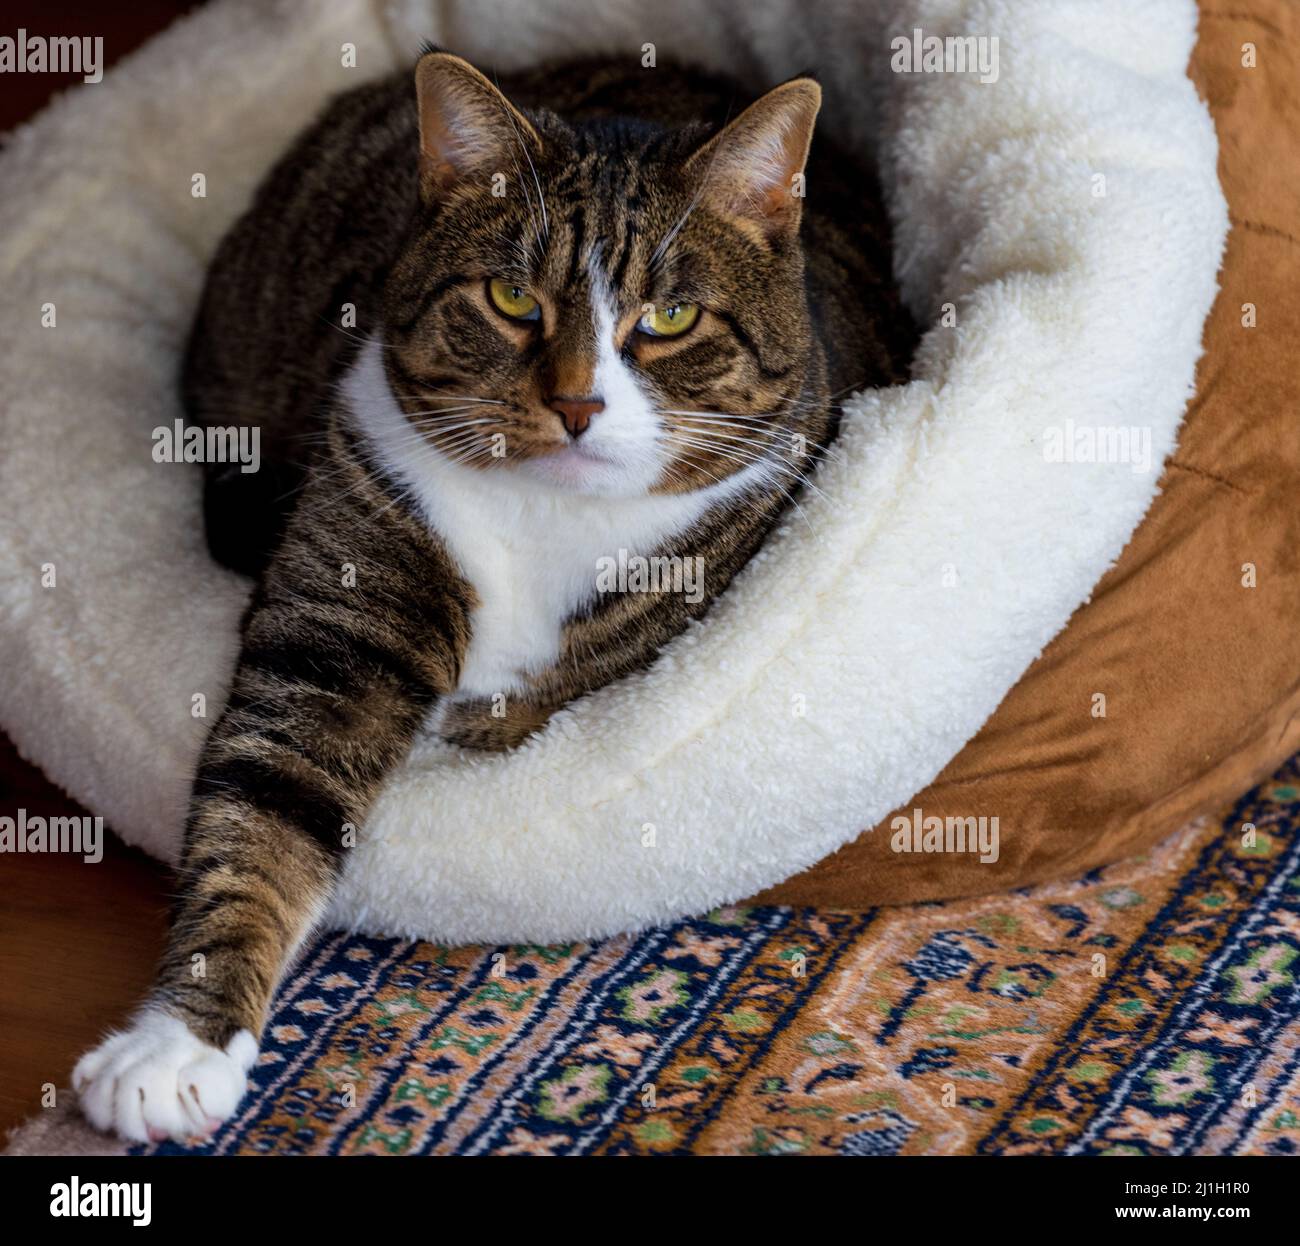 El gato tiene un aspecto intenso mientras se coloca en la cama con el brazo extendido Foto de stock